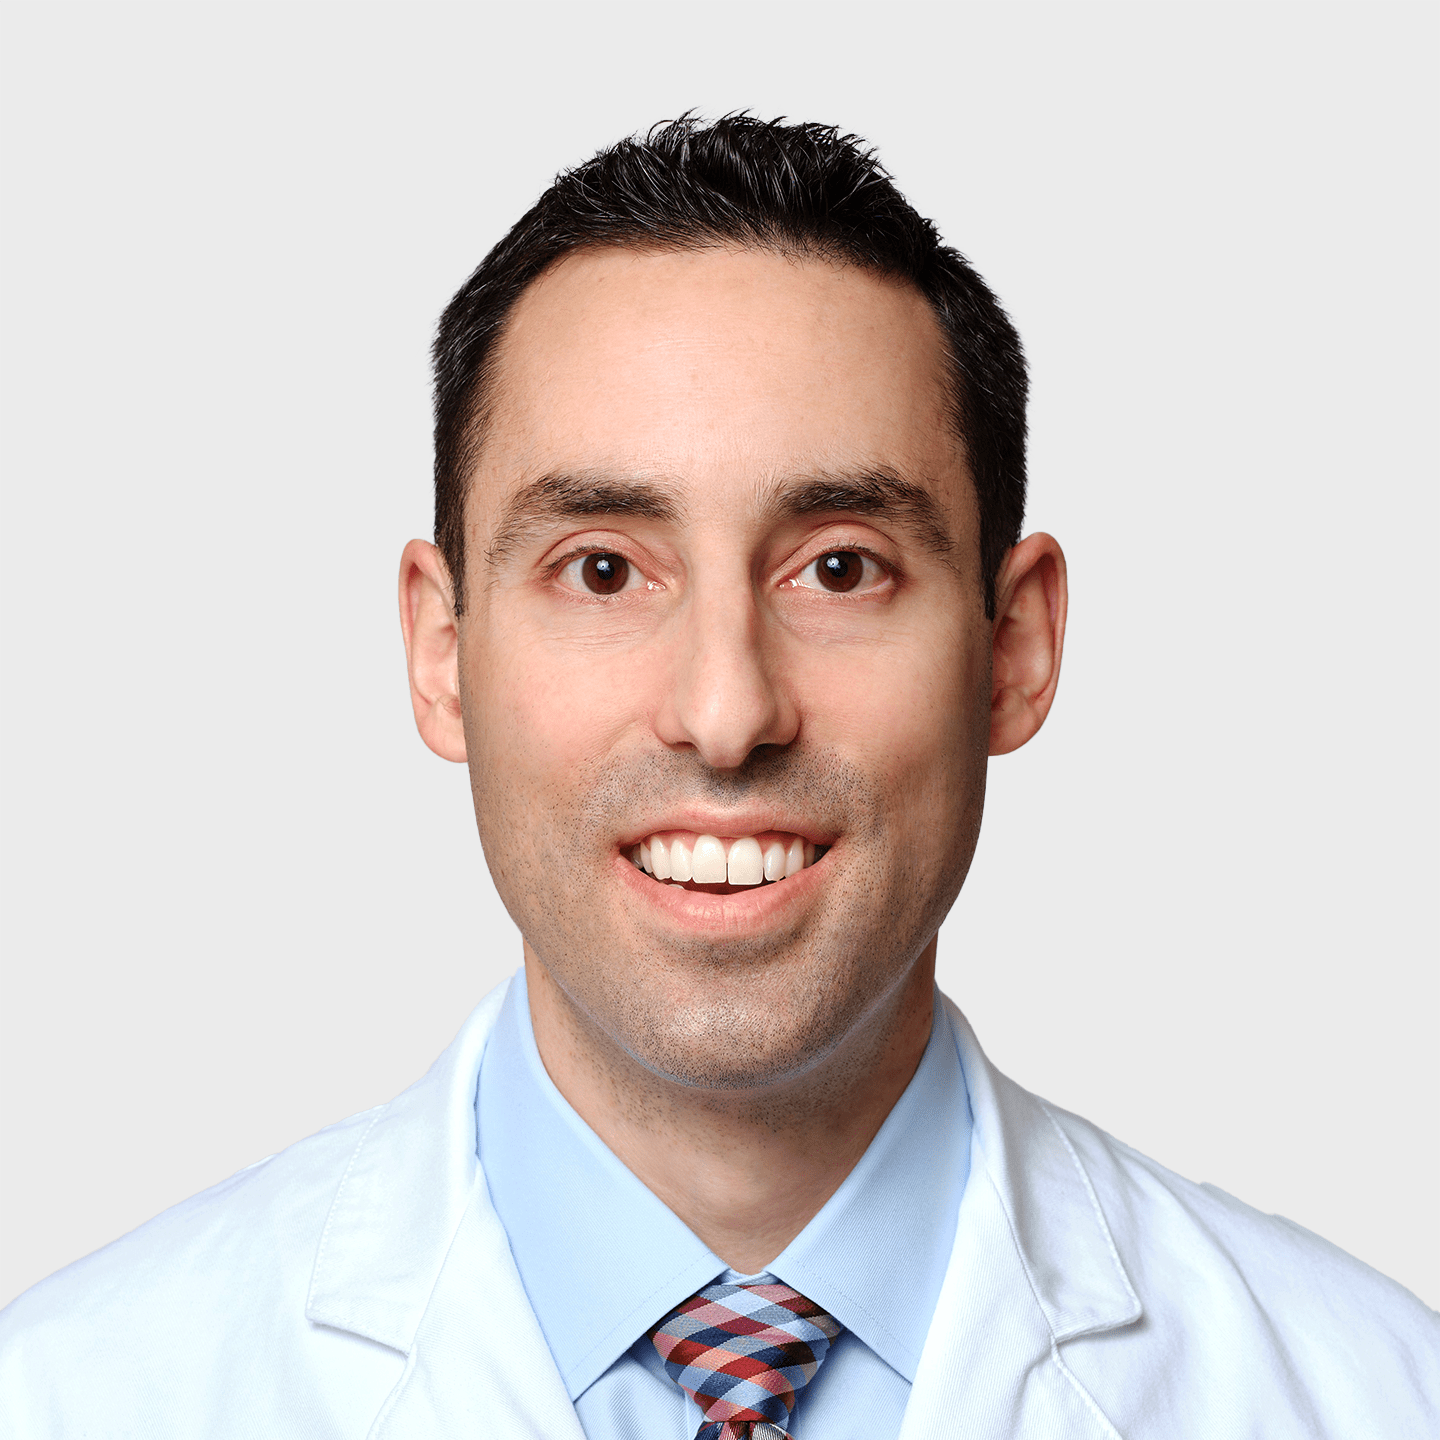 Physician Spotlight on Dr. Steven DiSegna